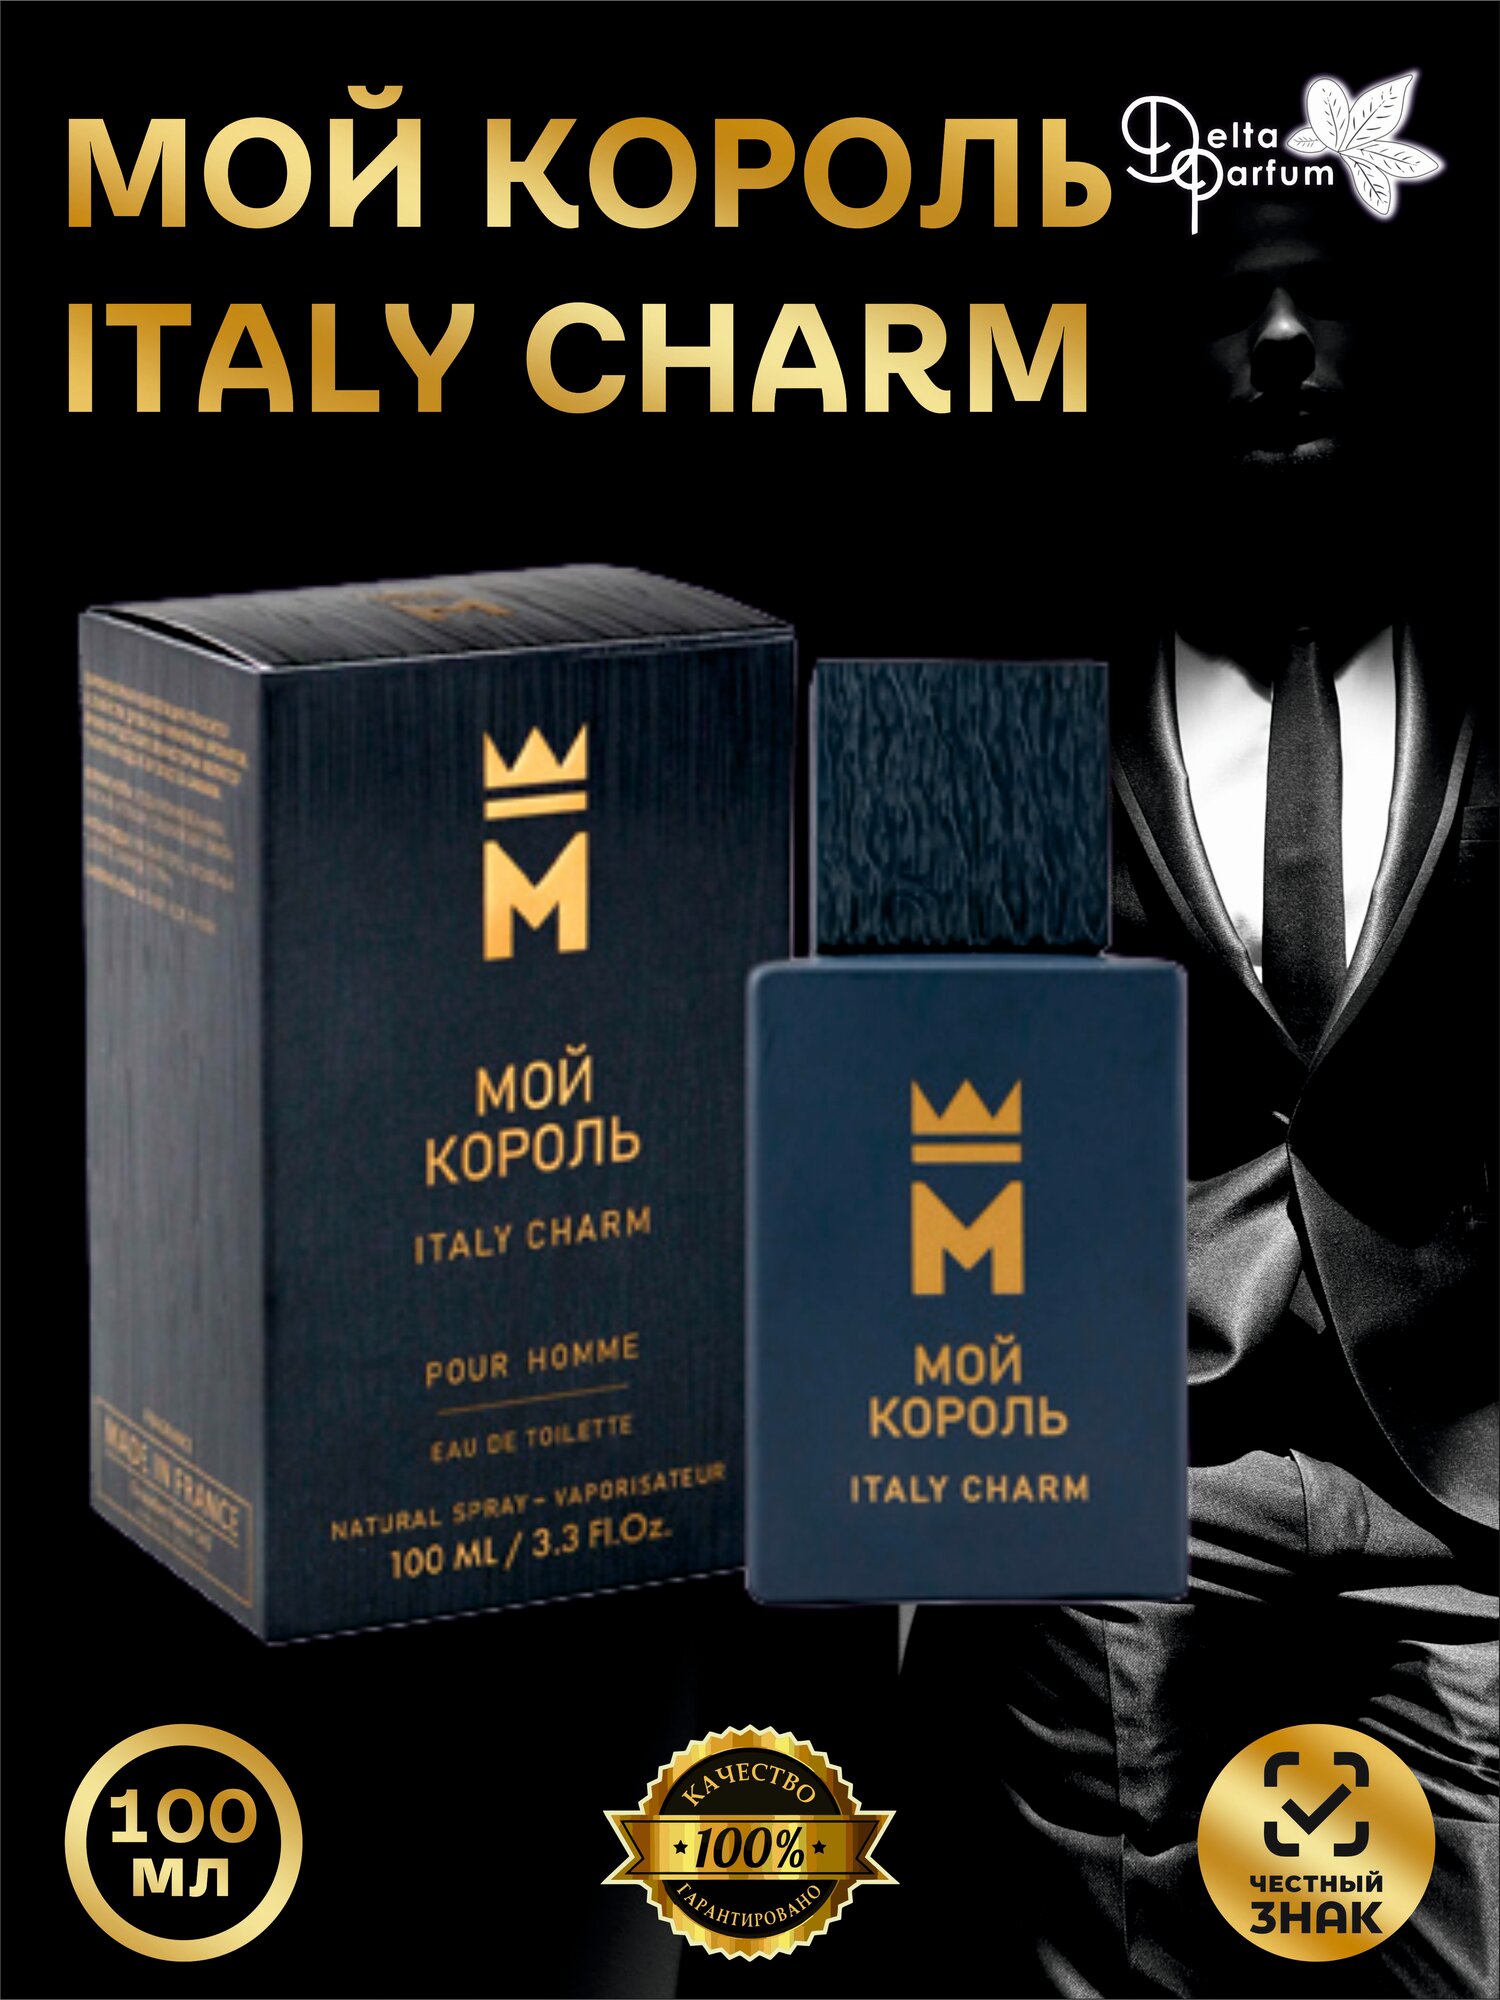 TODAY PARFUM (Delta parfum) Туалетная вода мужская Мой Король Italy Charm